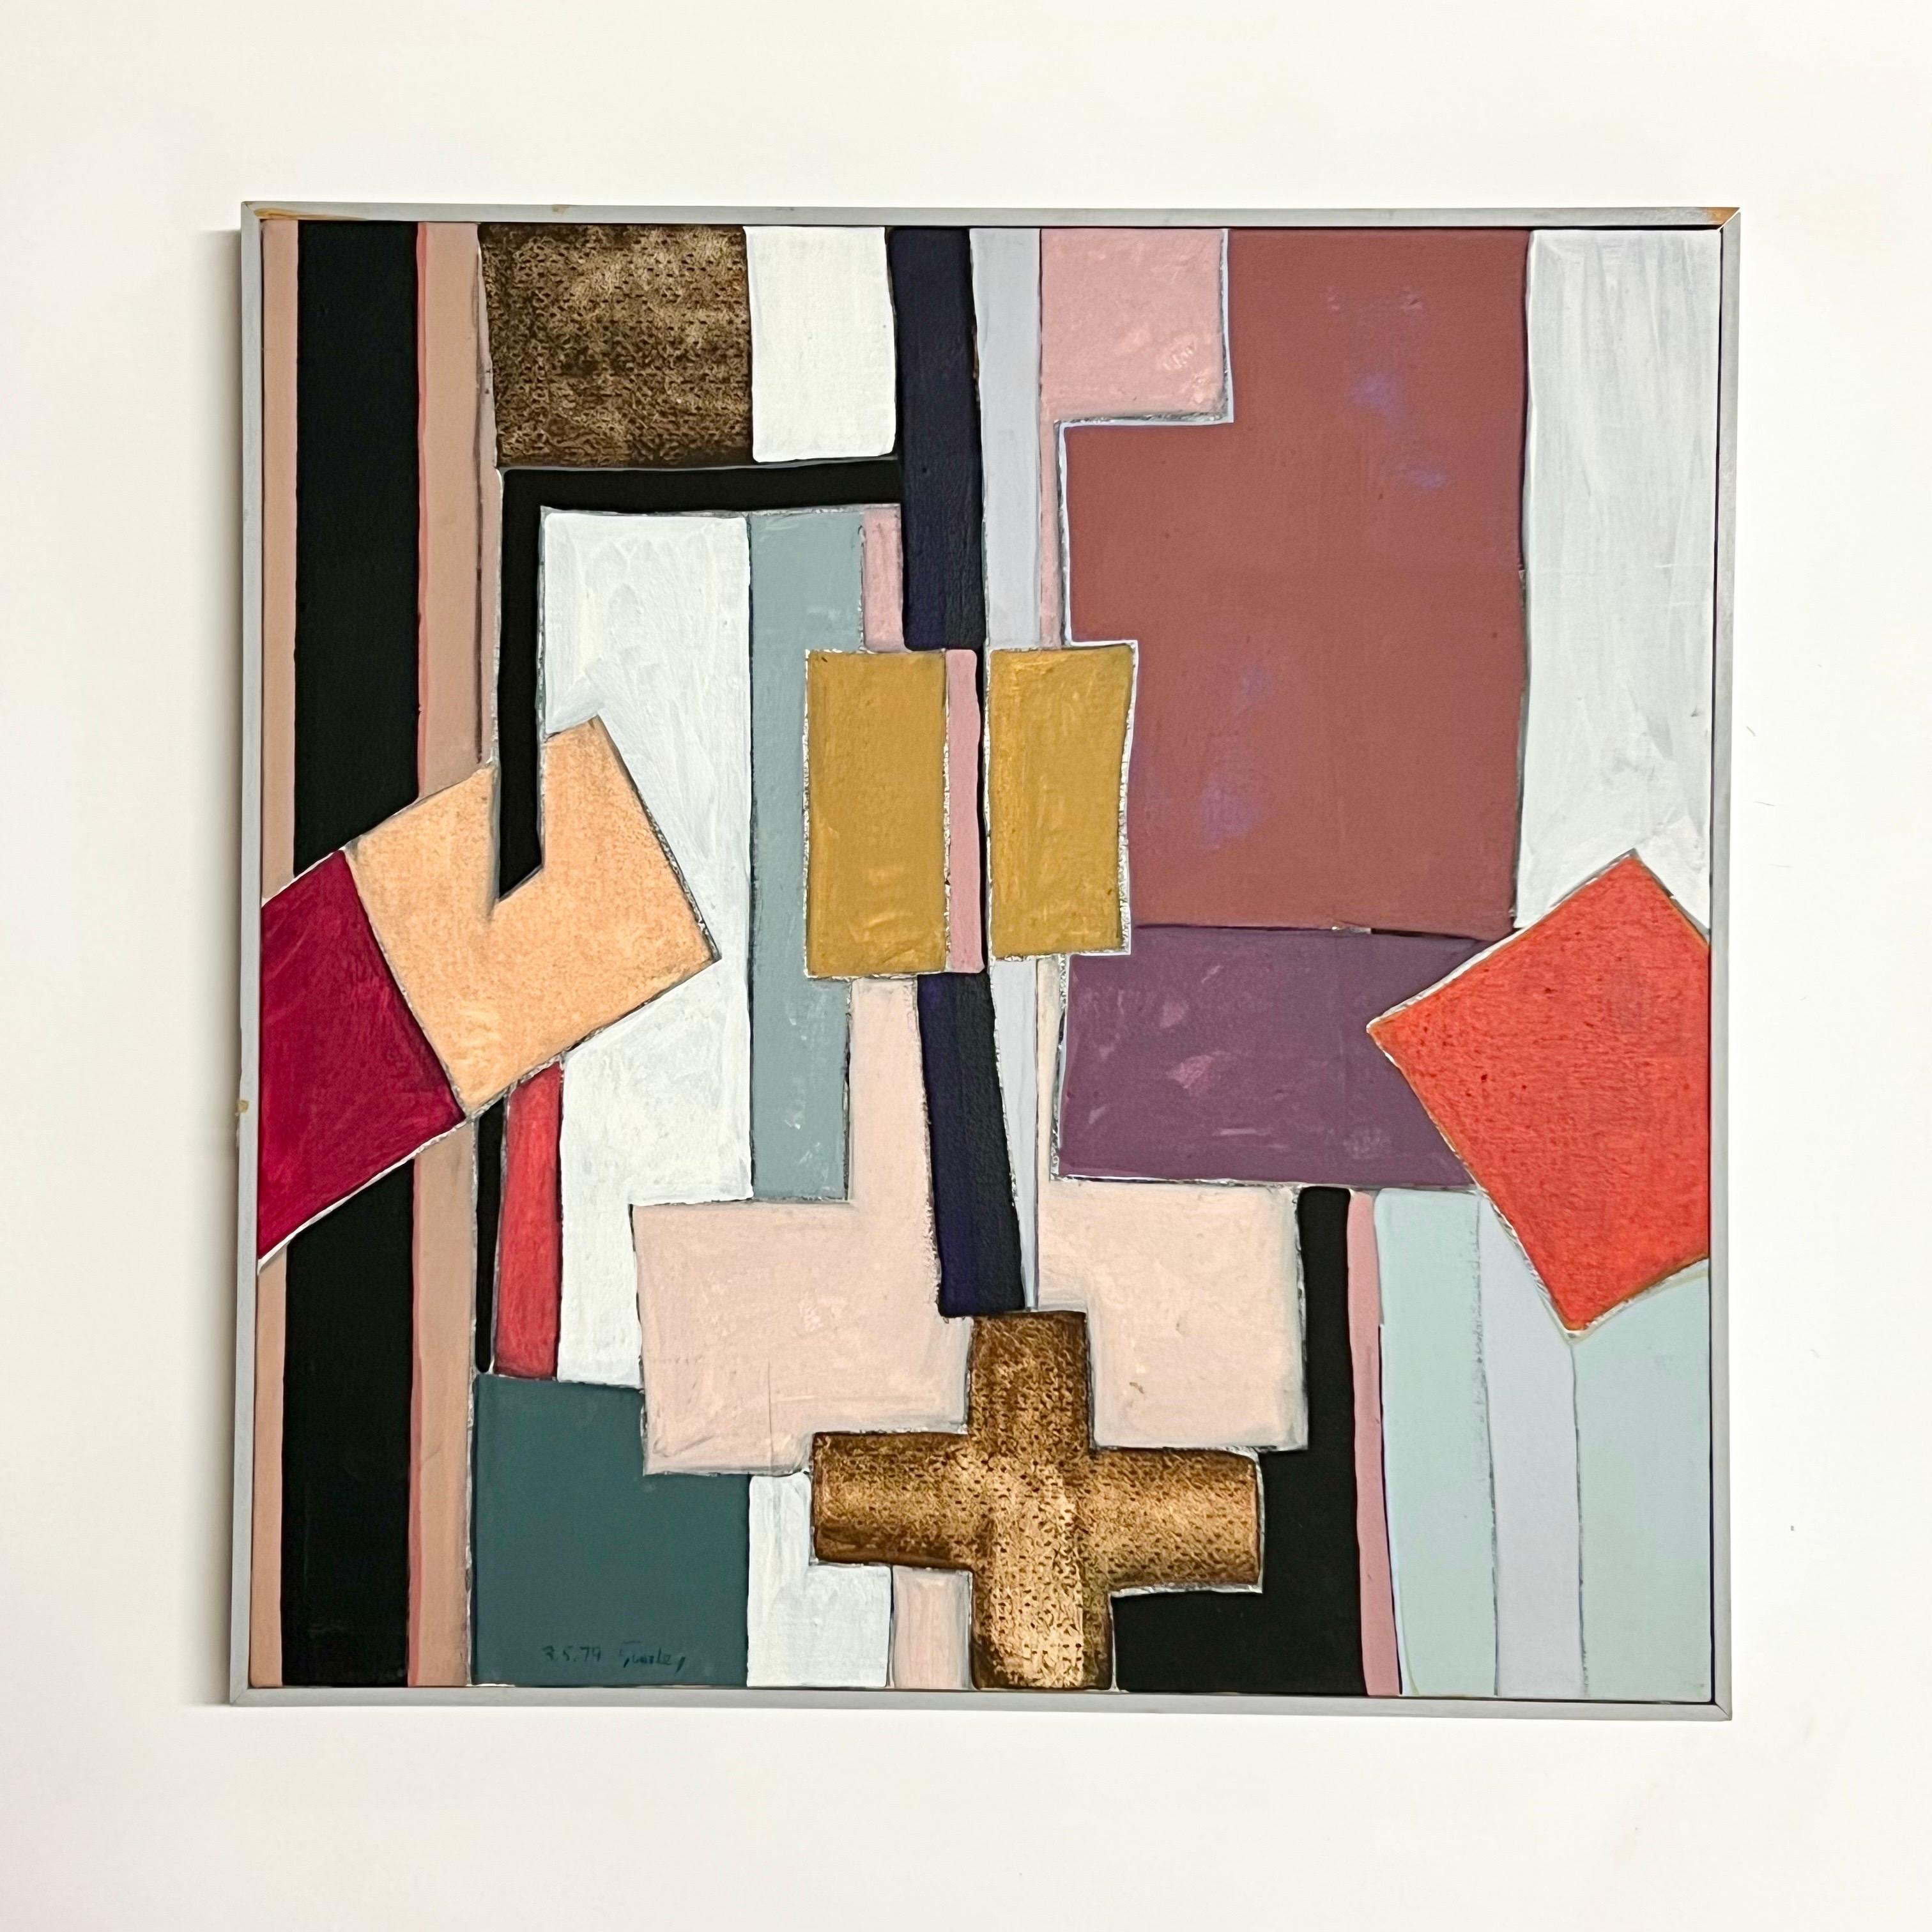 Belle huile abstraite géométrique sur toile de l'artiste américain, Harley Francis (1940-2017). Francis était un artiste incroyablement prolifique, peintre, décorateur et céramiste. Francis s'est installé en Californie du Nord dans les dernières